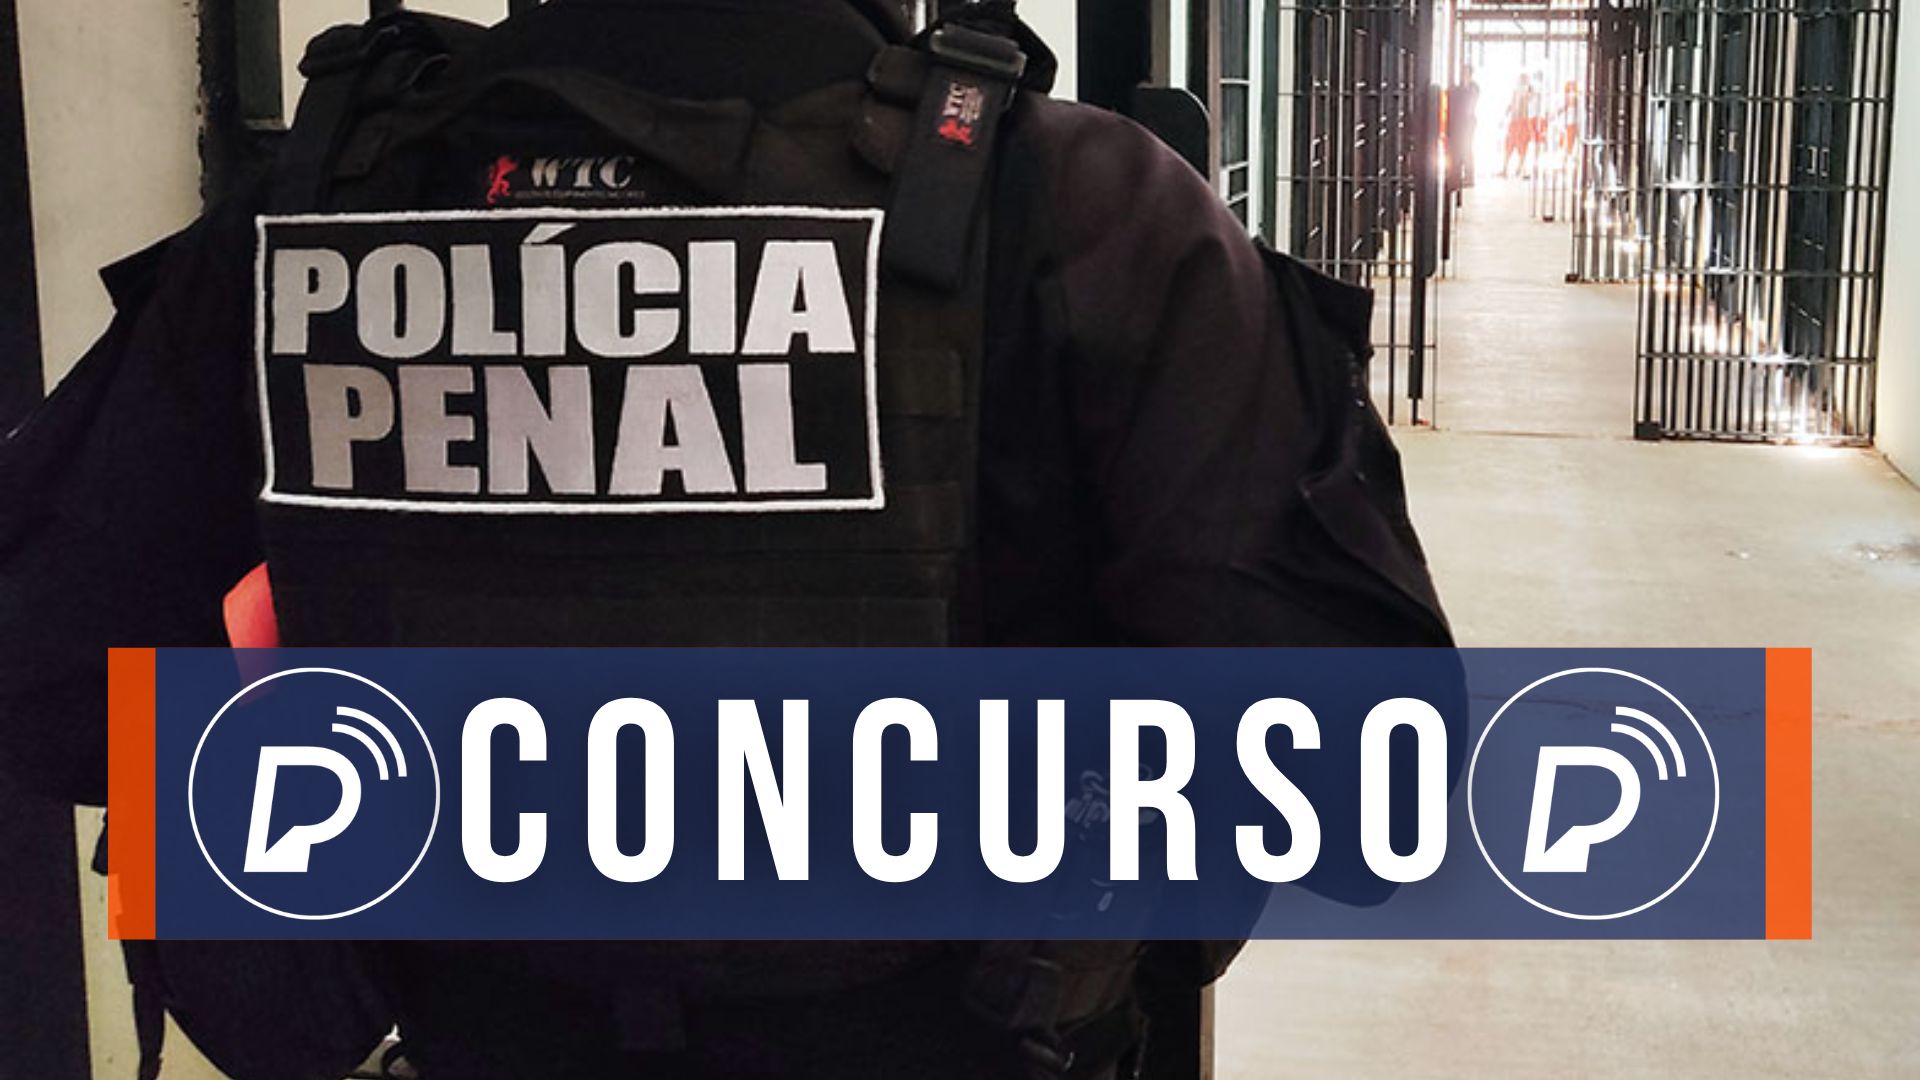 Concurso da Polícia Penal. Foto: Divulgação